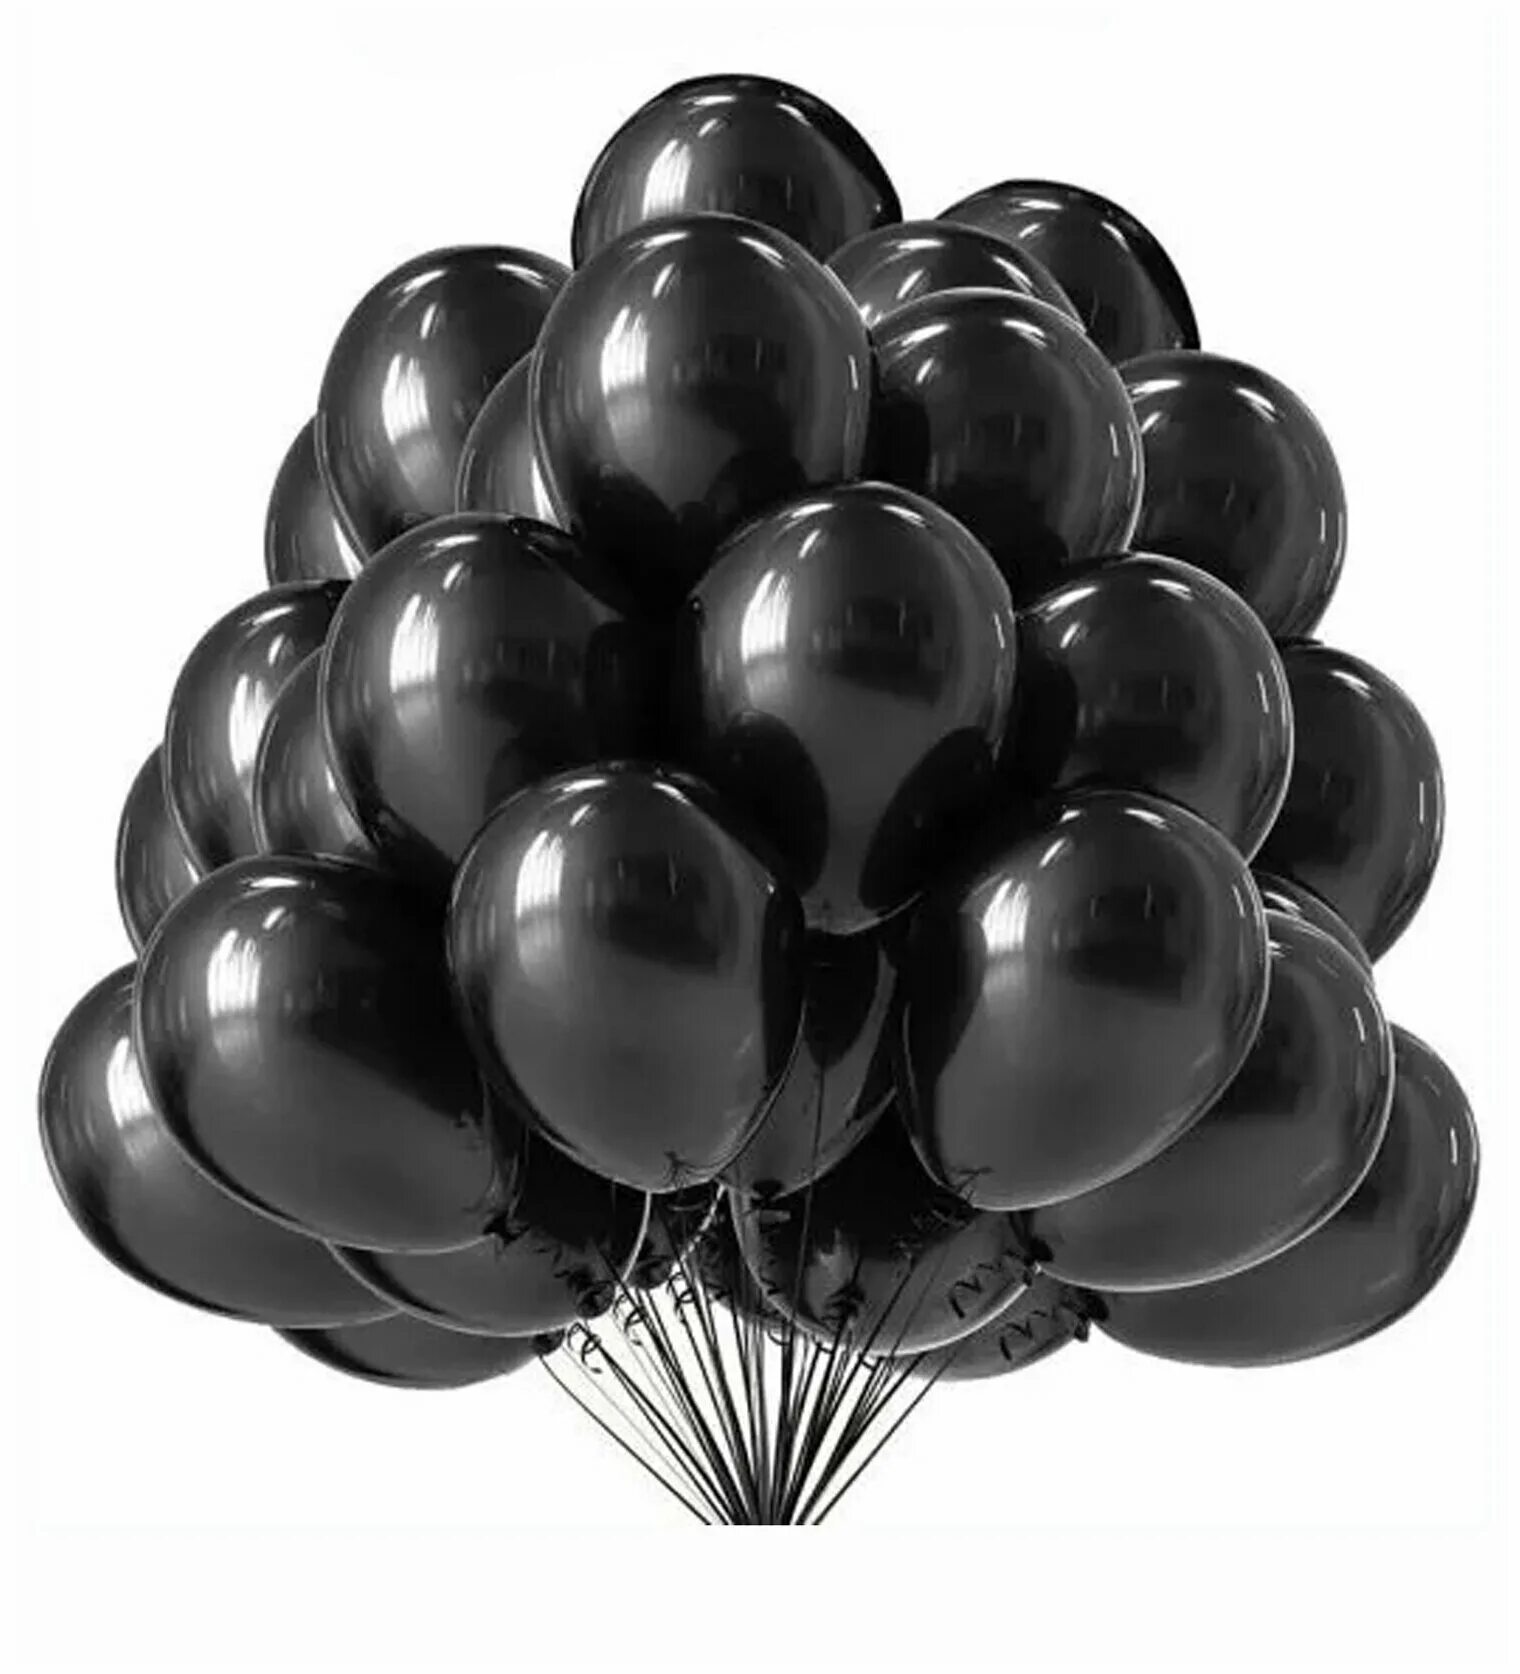 Черный воздушный шарик. Набор воздушных шаров (100 шт., 20 см). Черные воздушные шары. Черный шарик. Шайр черный.